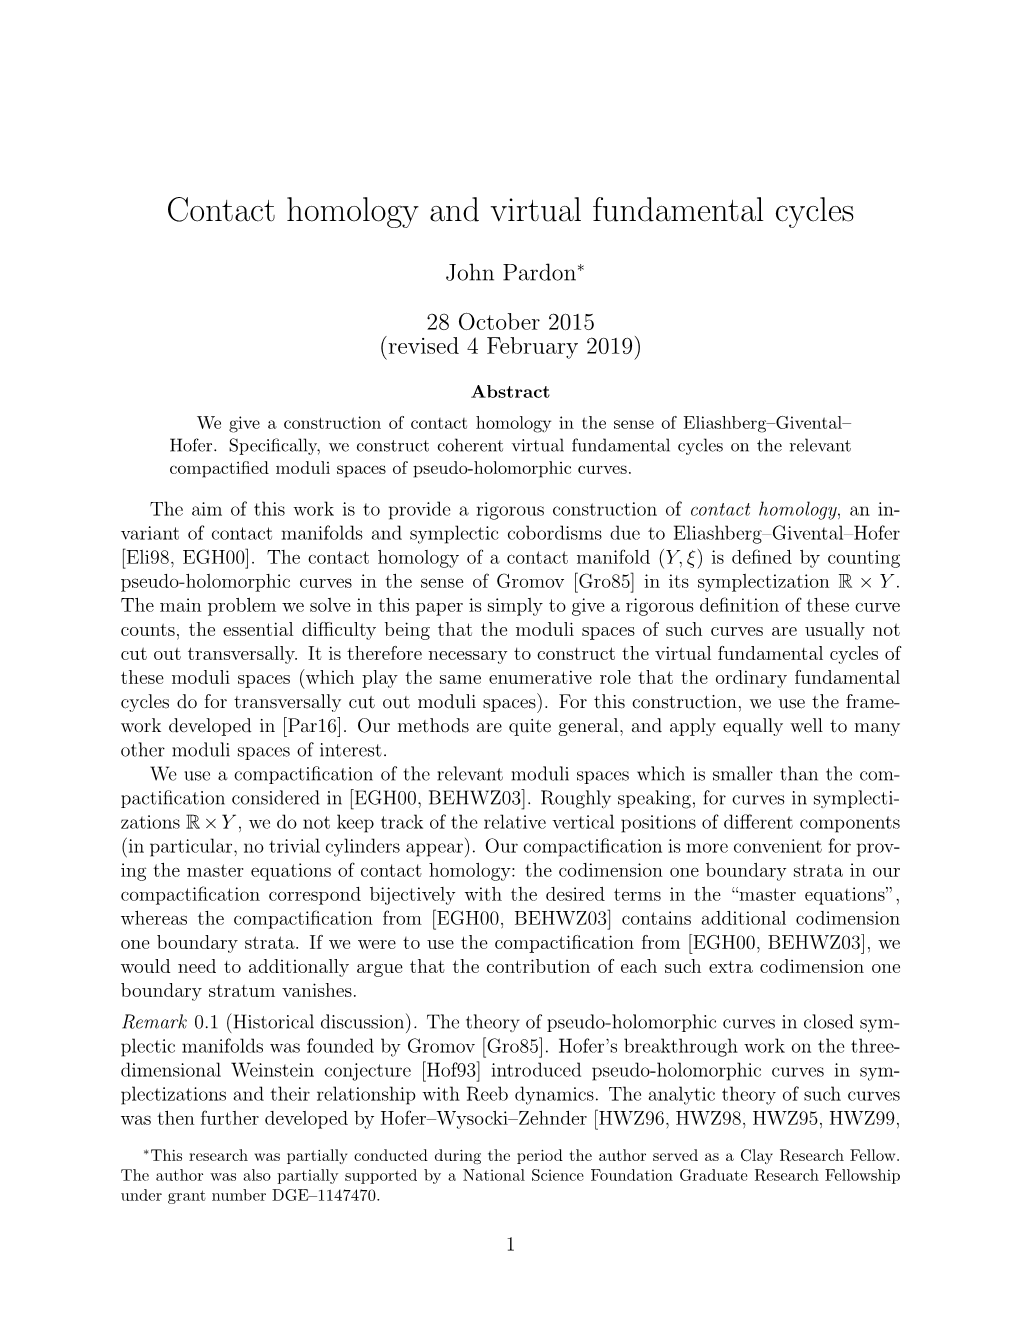 Contact Homology and Virtual Fundamental Cycles